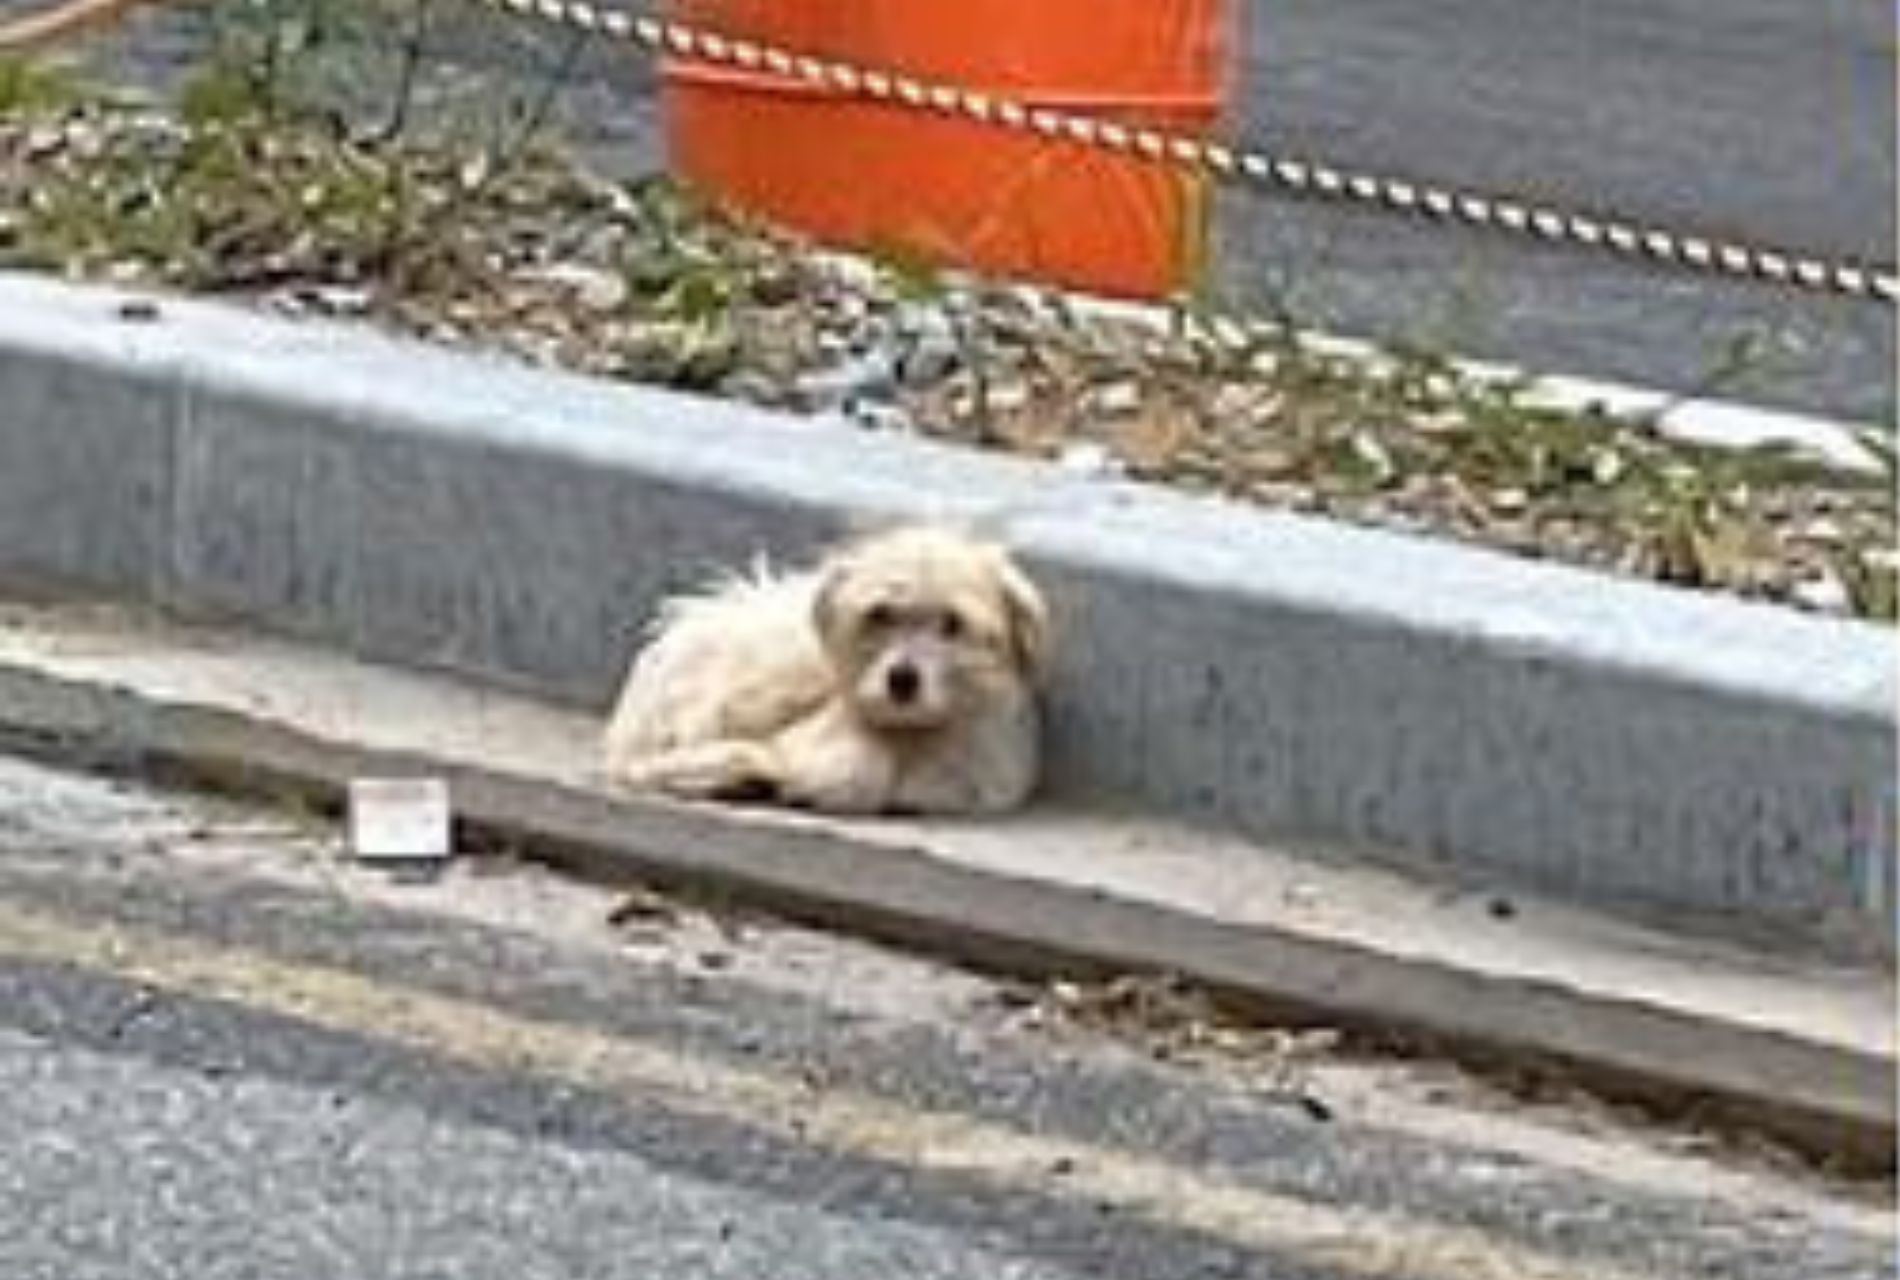 cagnolino salvato da strada trafficata